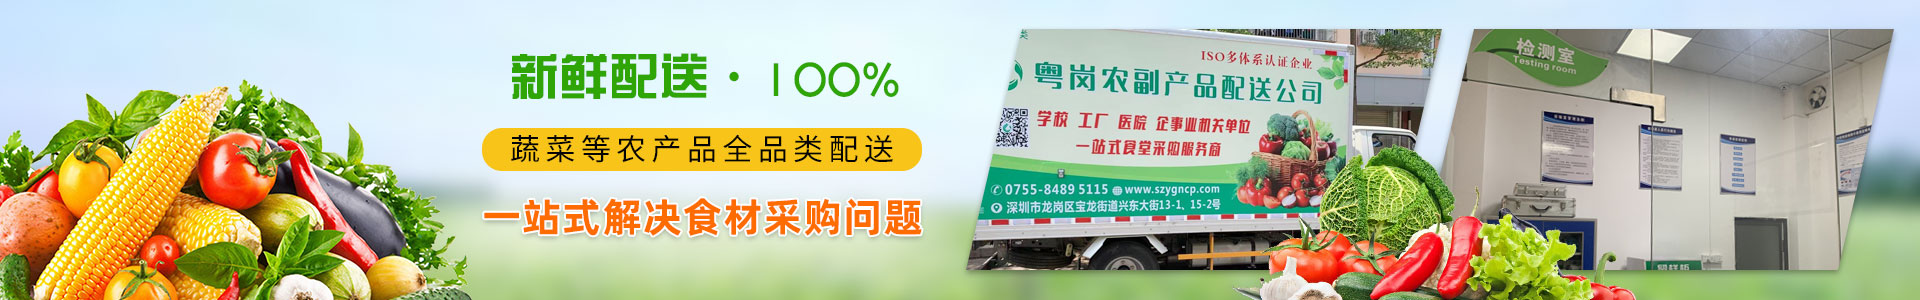 品牌荣誉农副产品加工配送服务绿色创建示范单位粤岗蔬菜配送